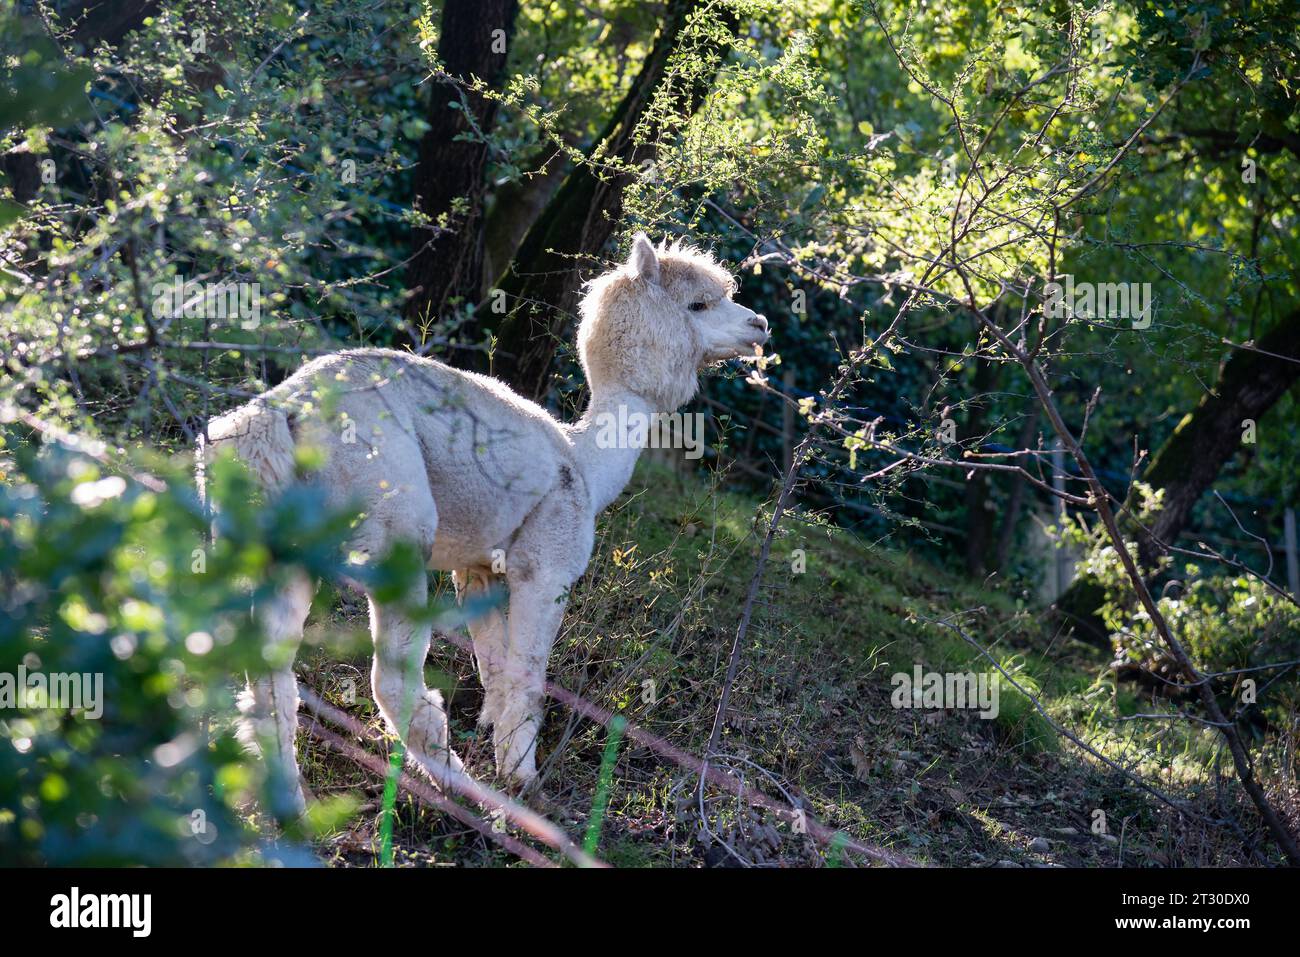 Esemplare di mammifero ruminante alpaca originario del Sud America Foto Stock